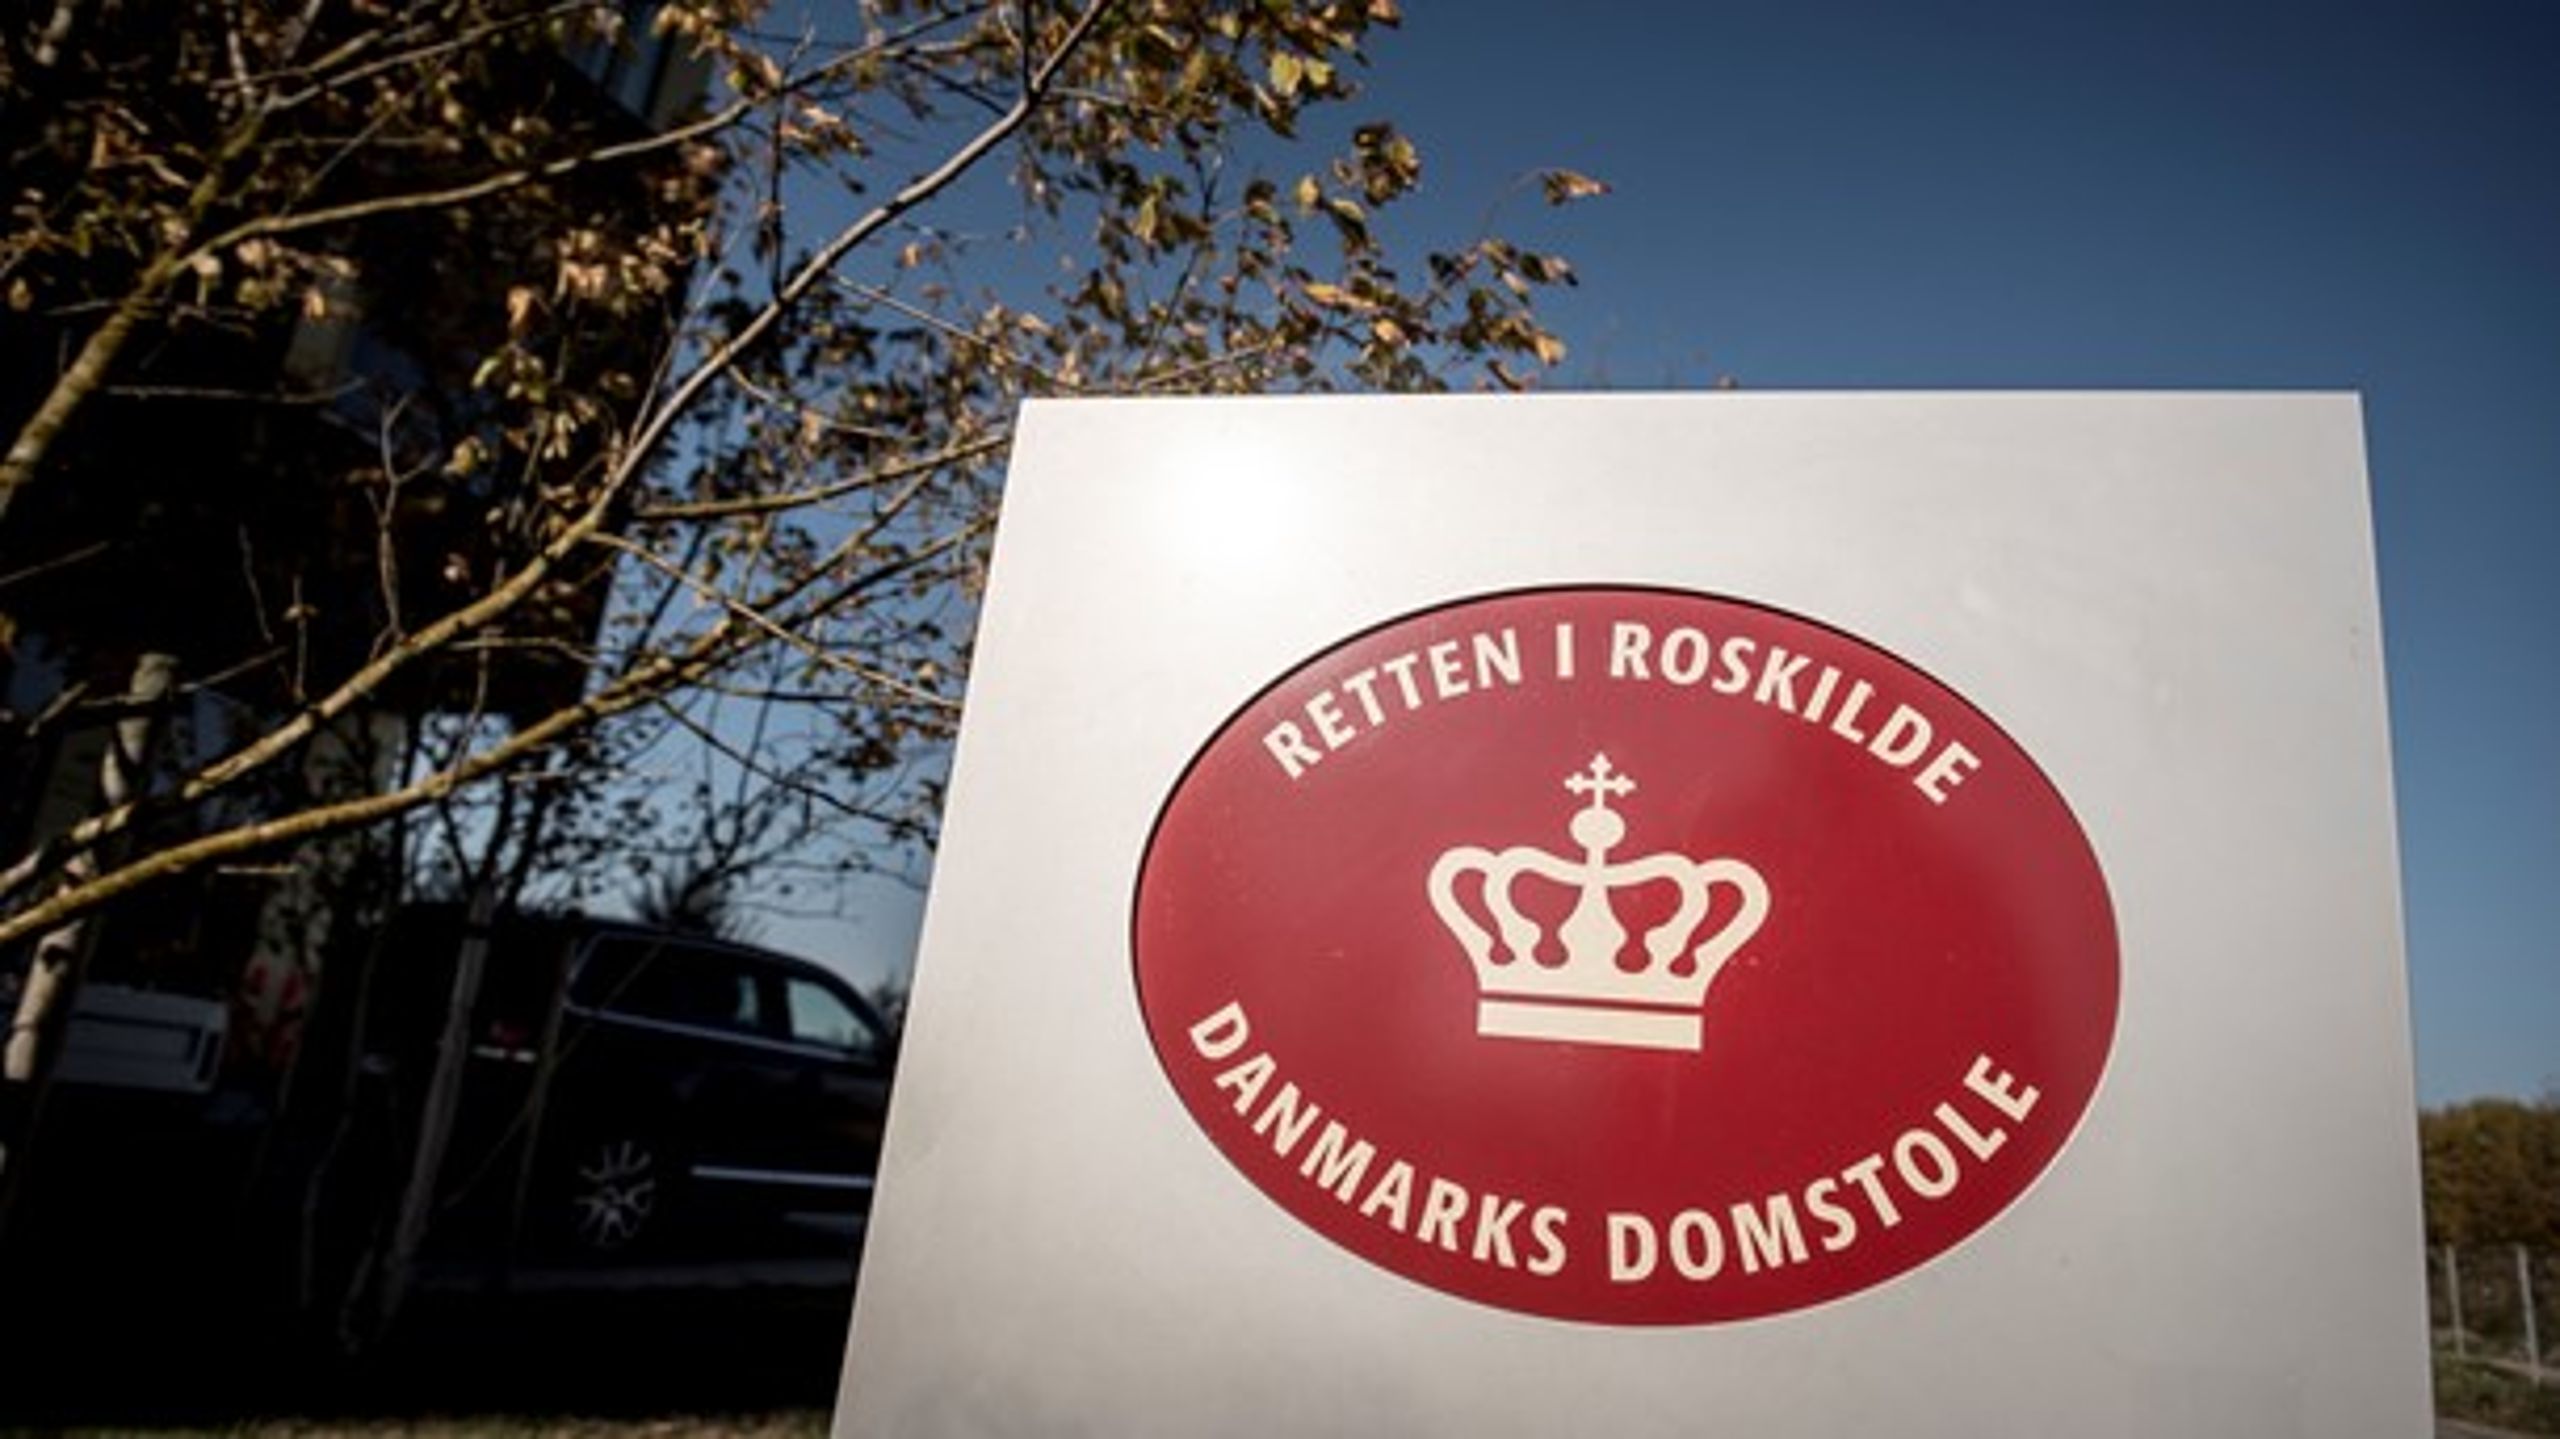 René Kauland var tiltalt for drabsforsøg og skulle onsdag have været til retsmøde i Retten i Roskilde.